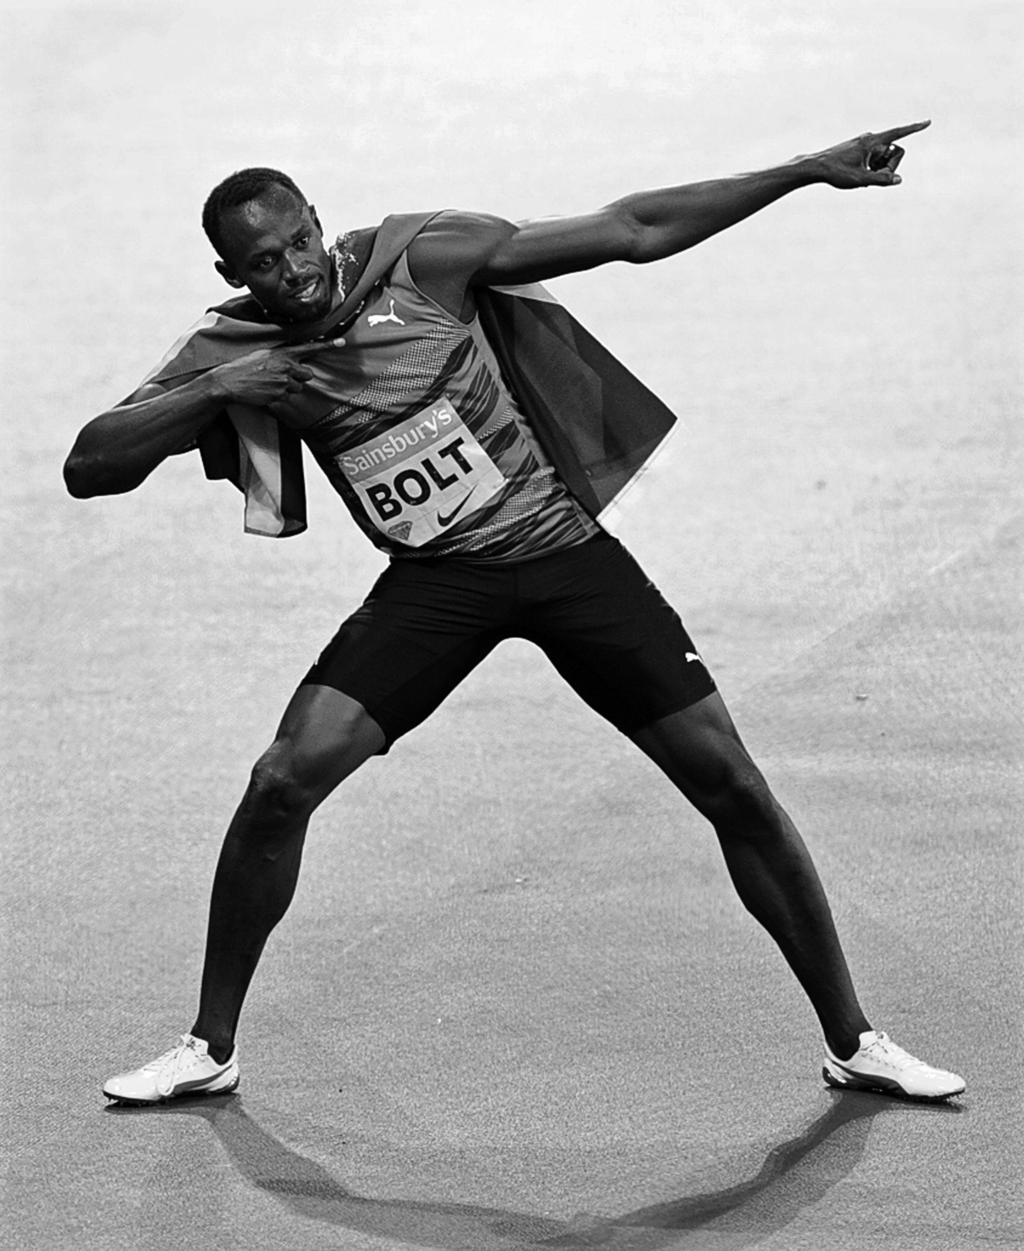 Starbiografie: Usain Bolt Schwierigkeitsgrad 2 Usain St. Leo Bolt wurde am 21. August 1986 in Jamaika geboren. Der Sprinter lebt auch heute dort.